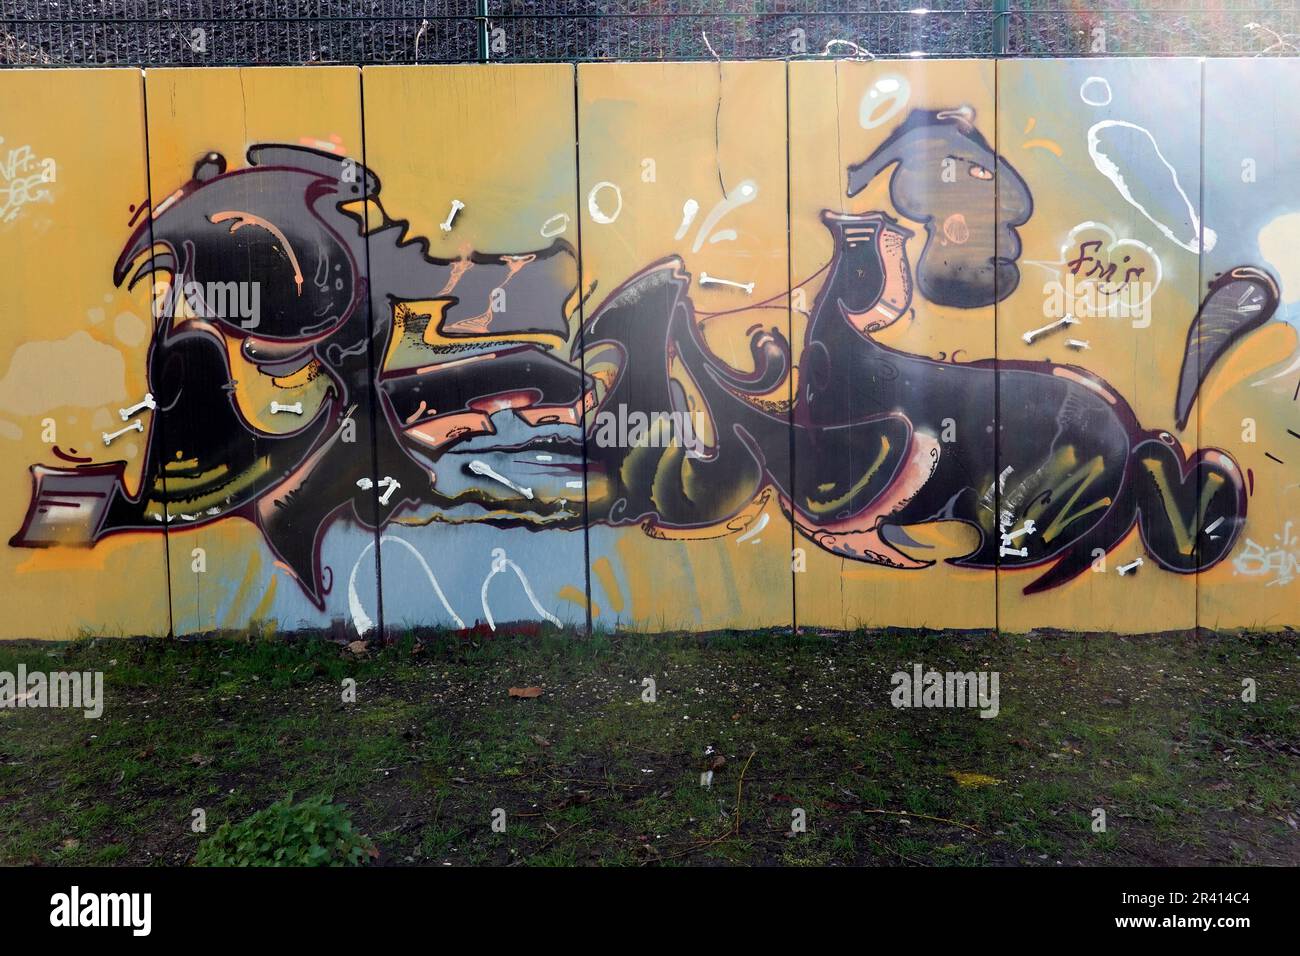 Legaler, künstlerischer Graffito an der Wand rund um Kalkberg, die als Hall of Fame bezeichnet wird Stockfoto